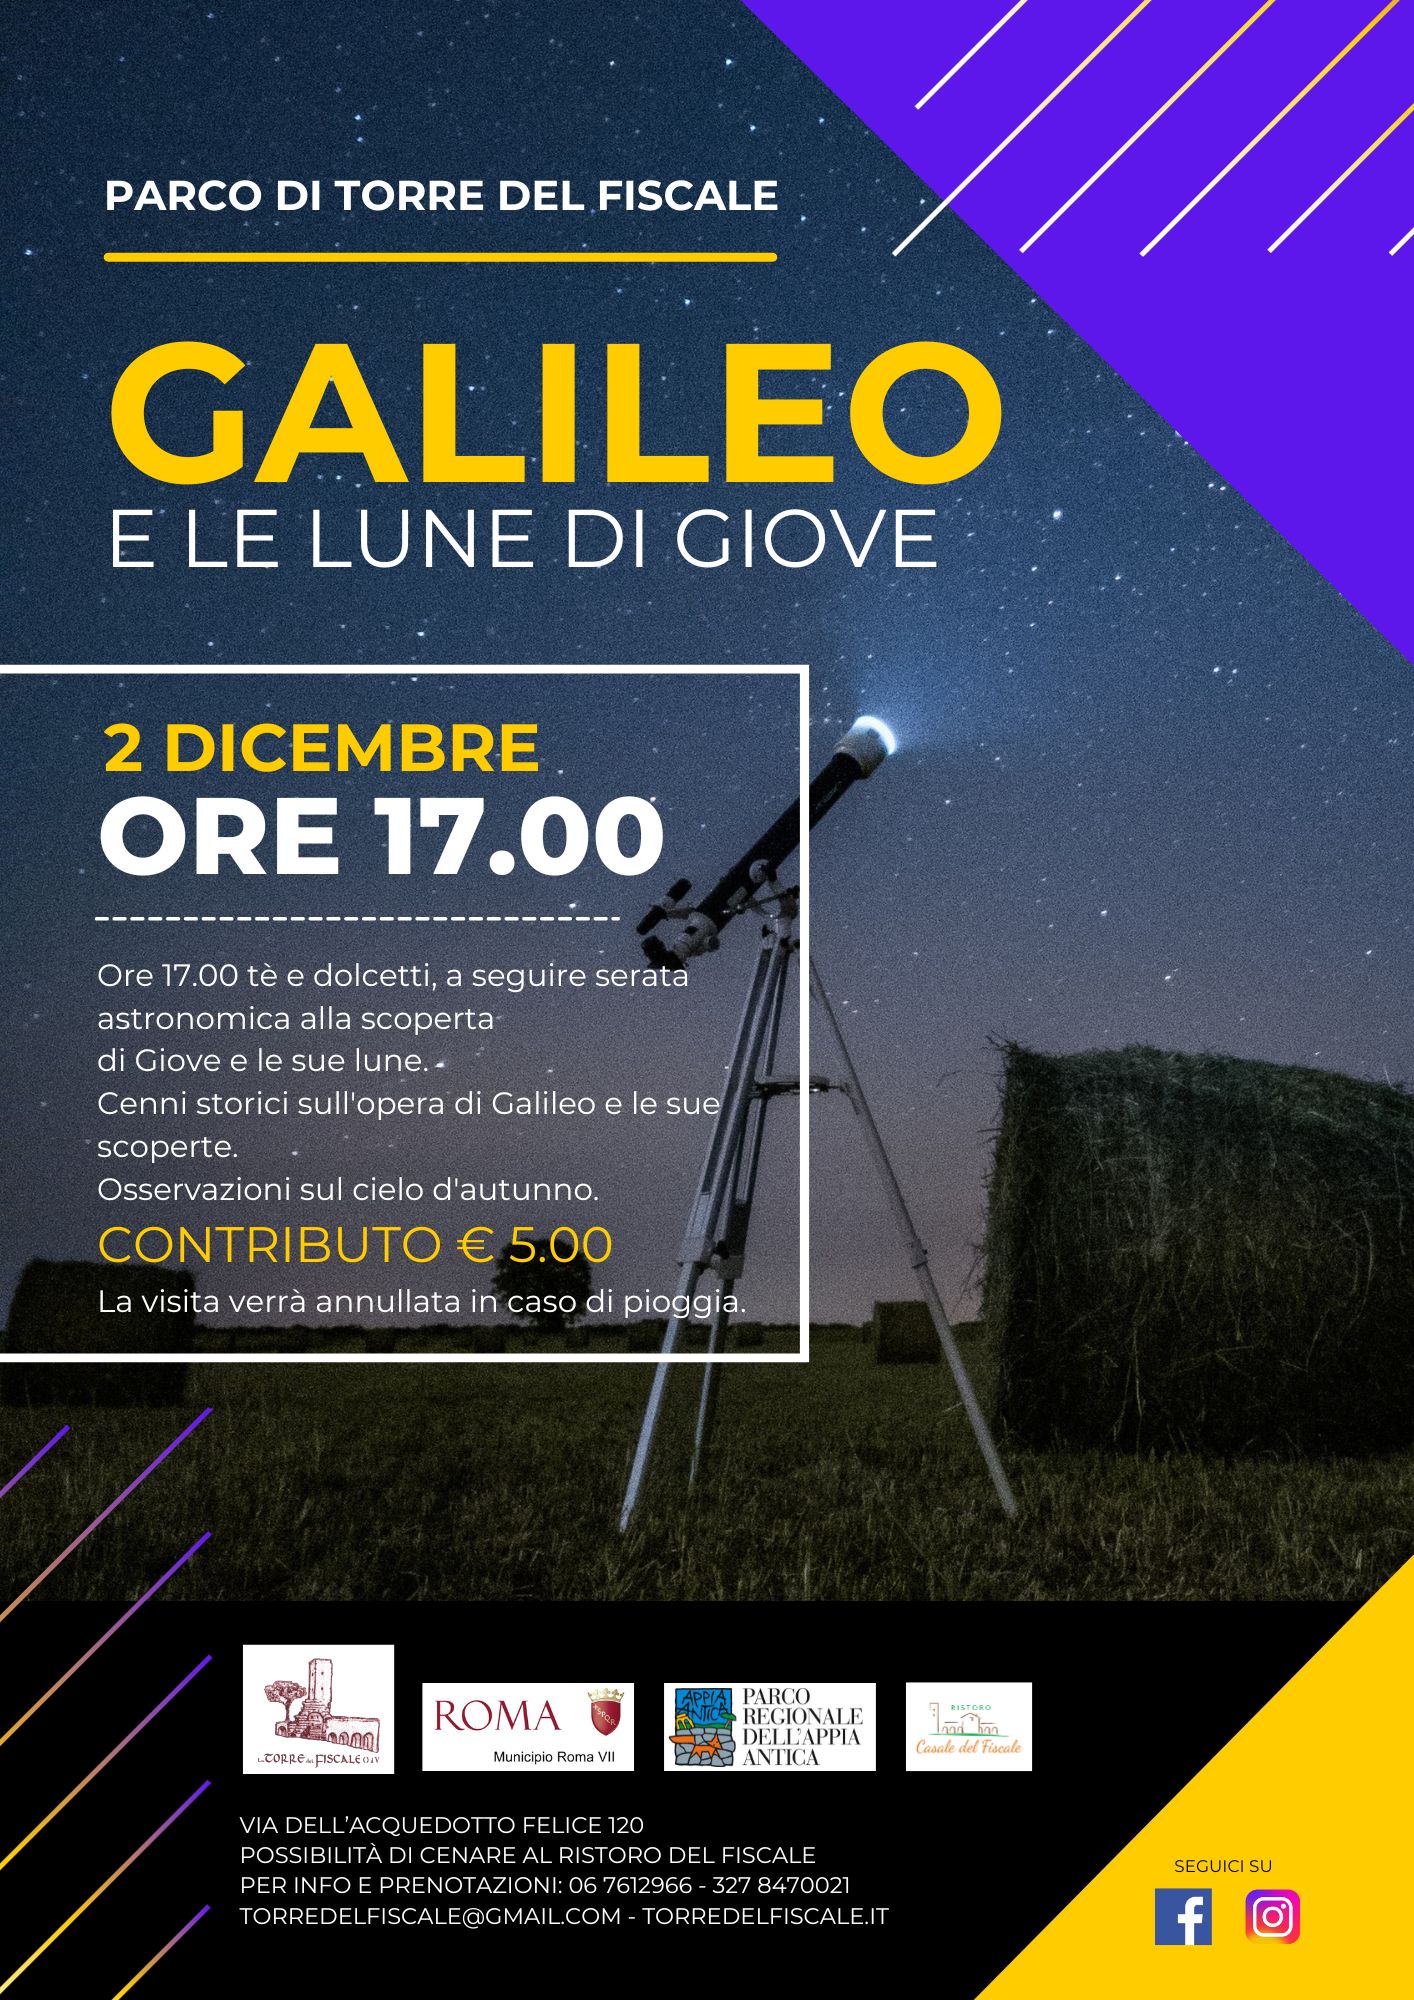 Galileo e le lune di Giove: visita astronomica